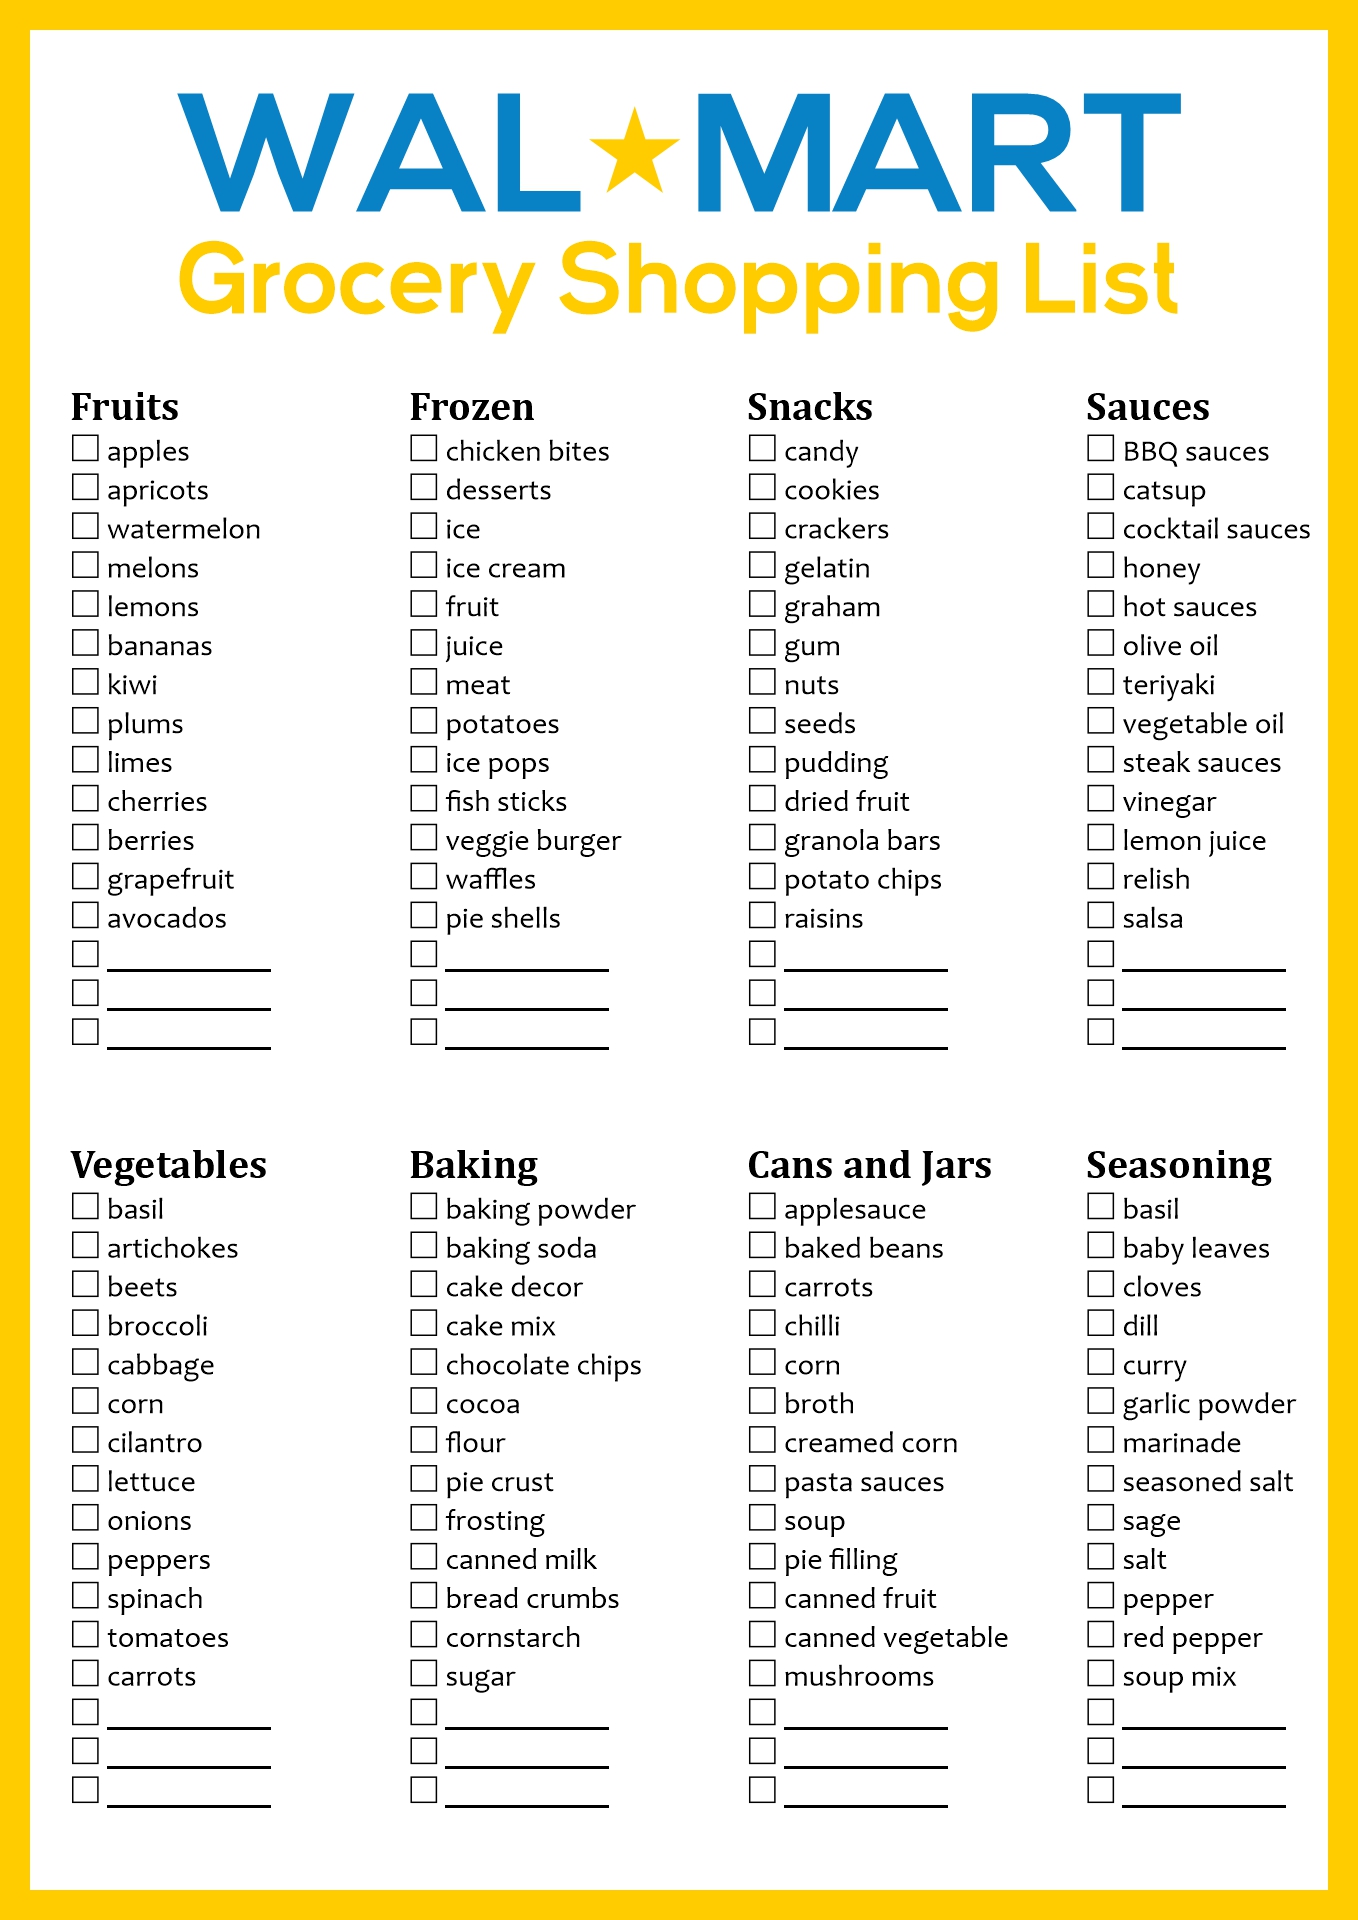 Walmart Grocery List Printable